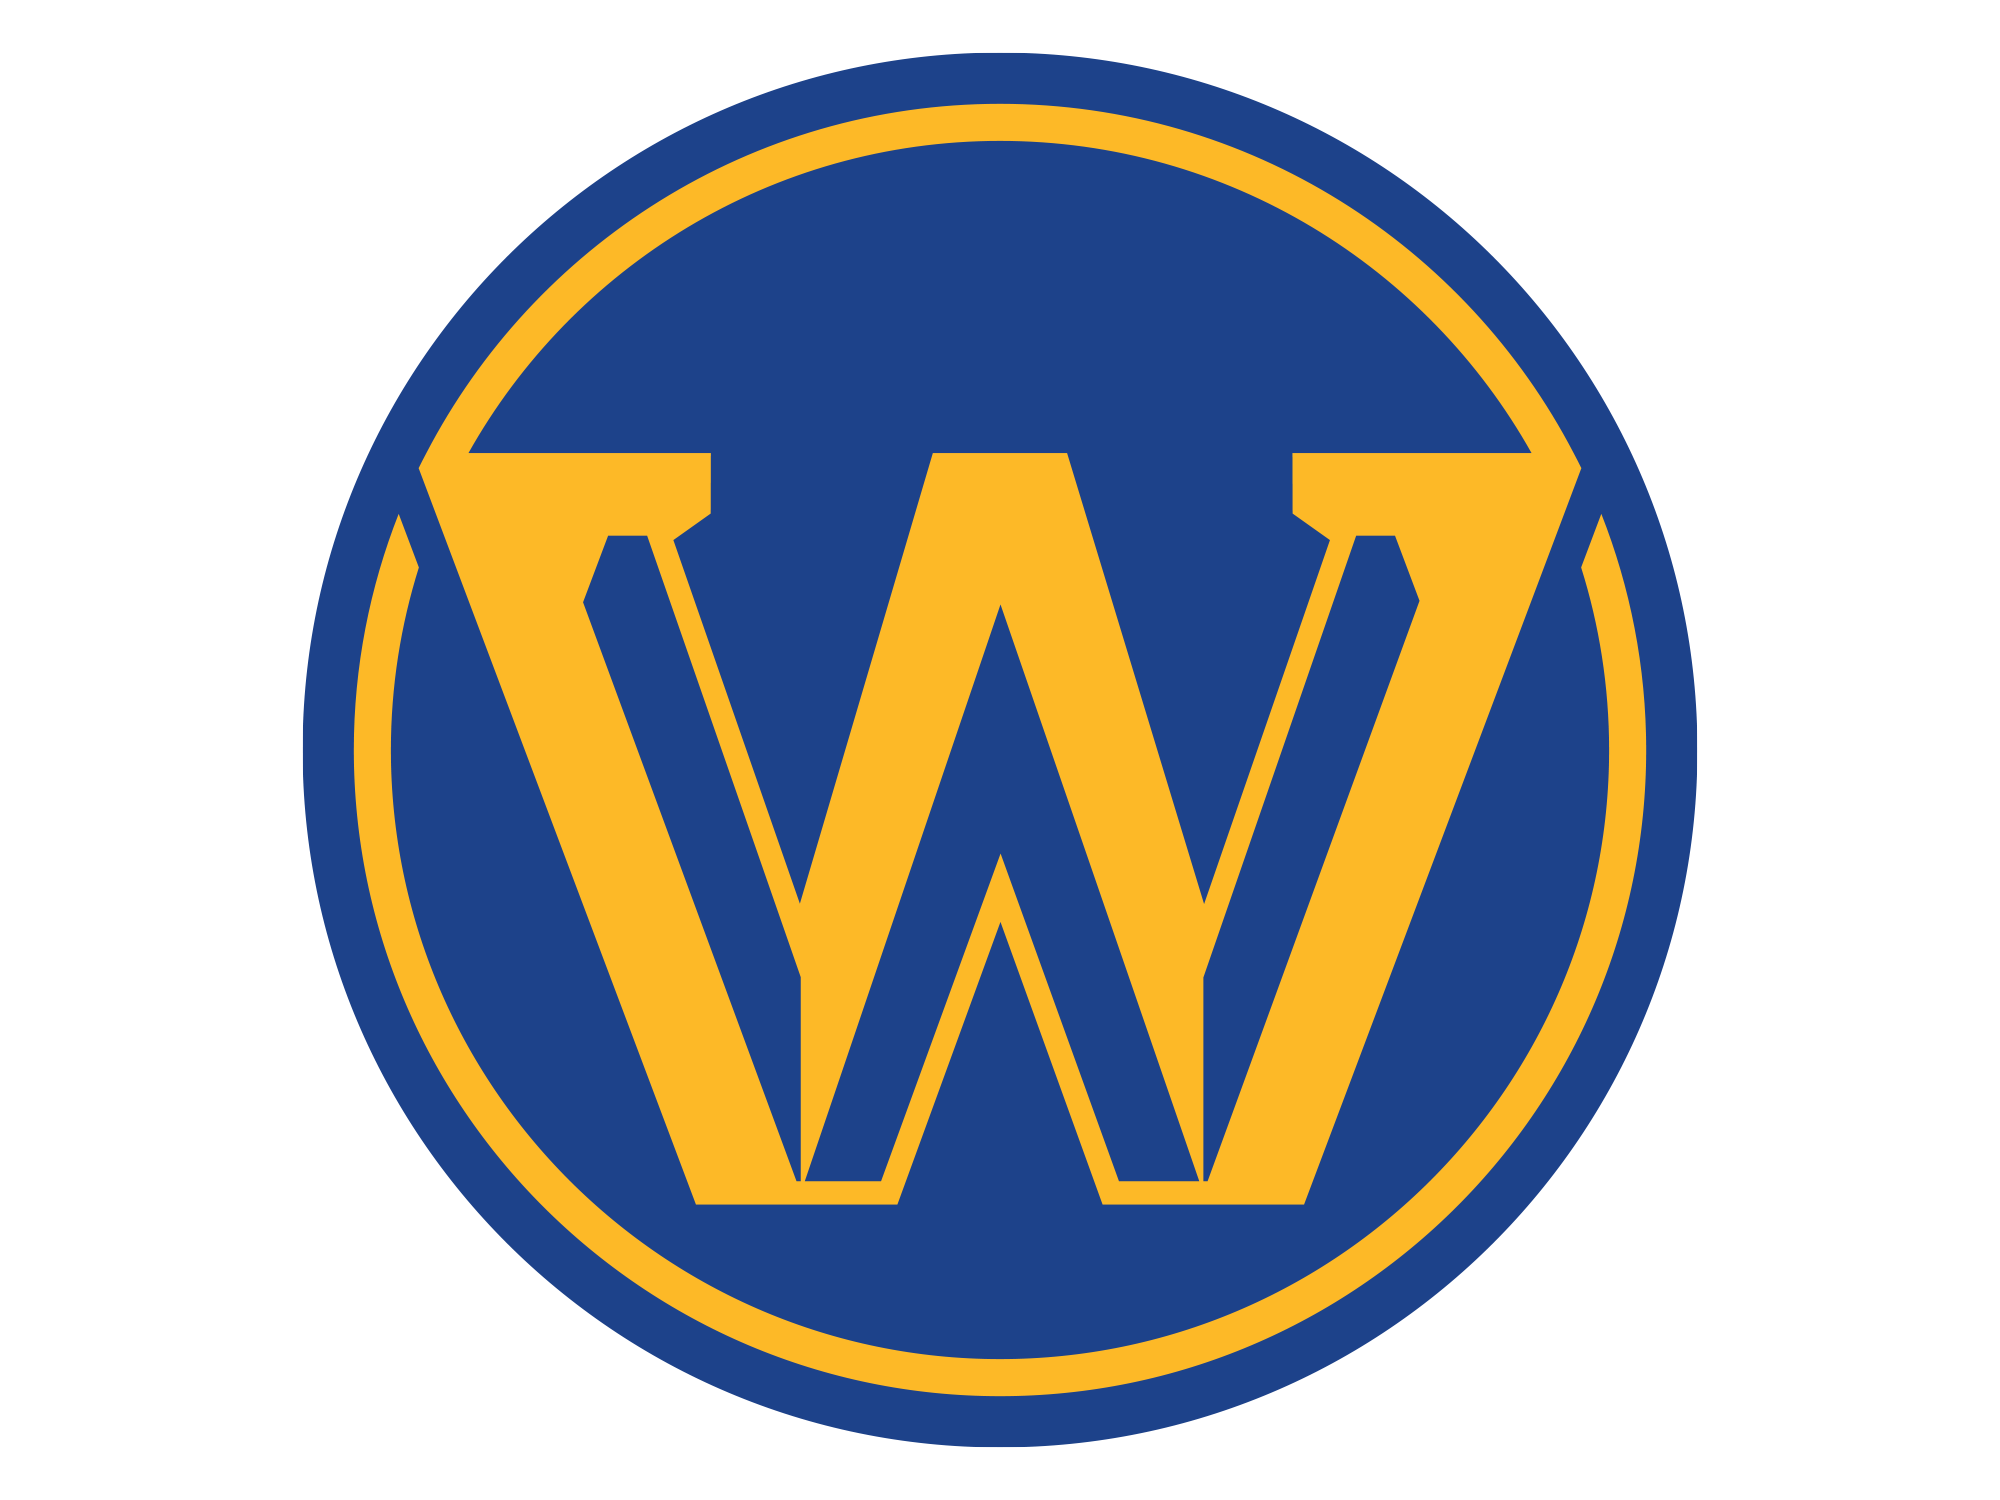 nba west logo